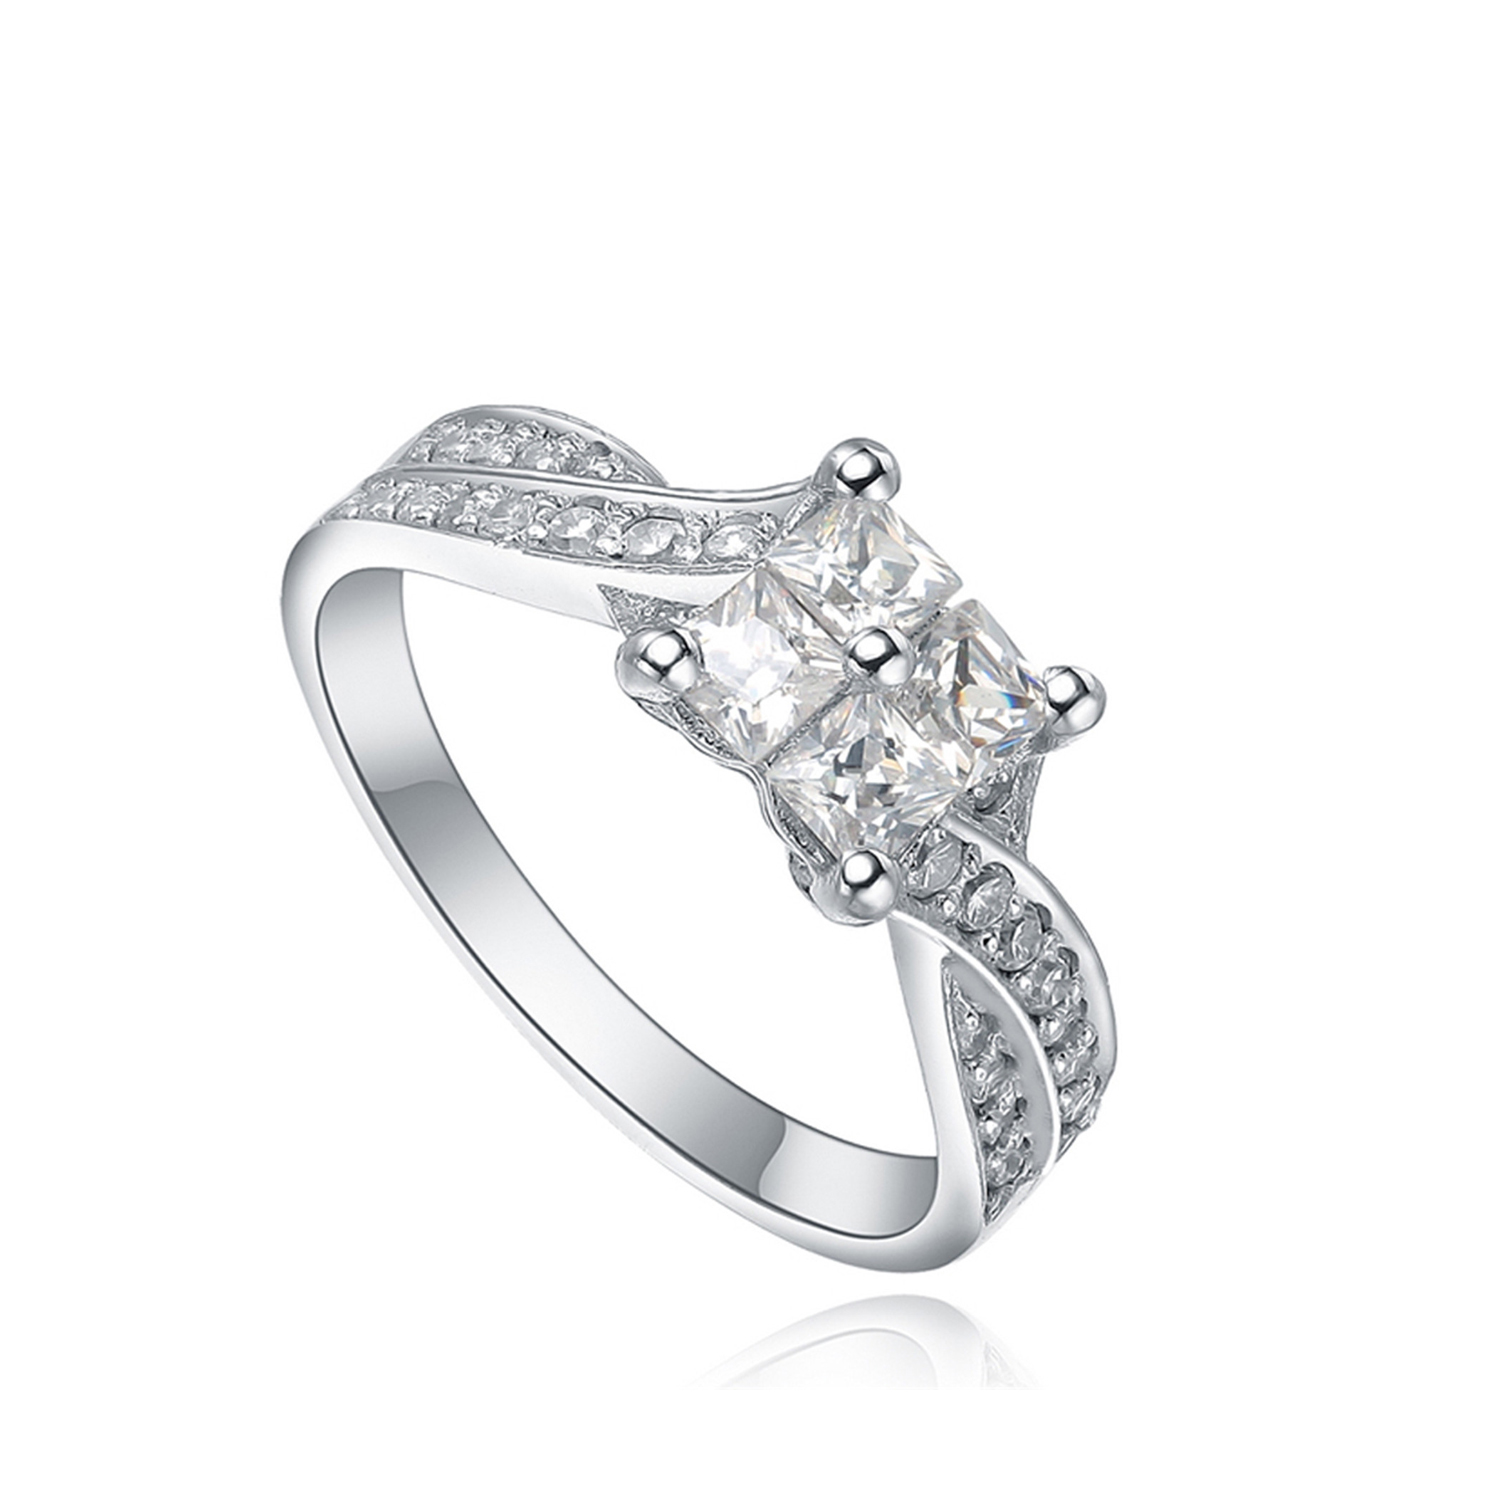  custom eternity wedding engagement silver finger ring square design for women